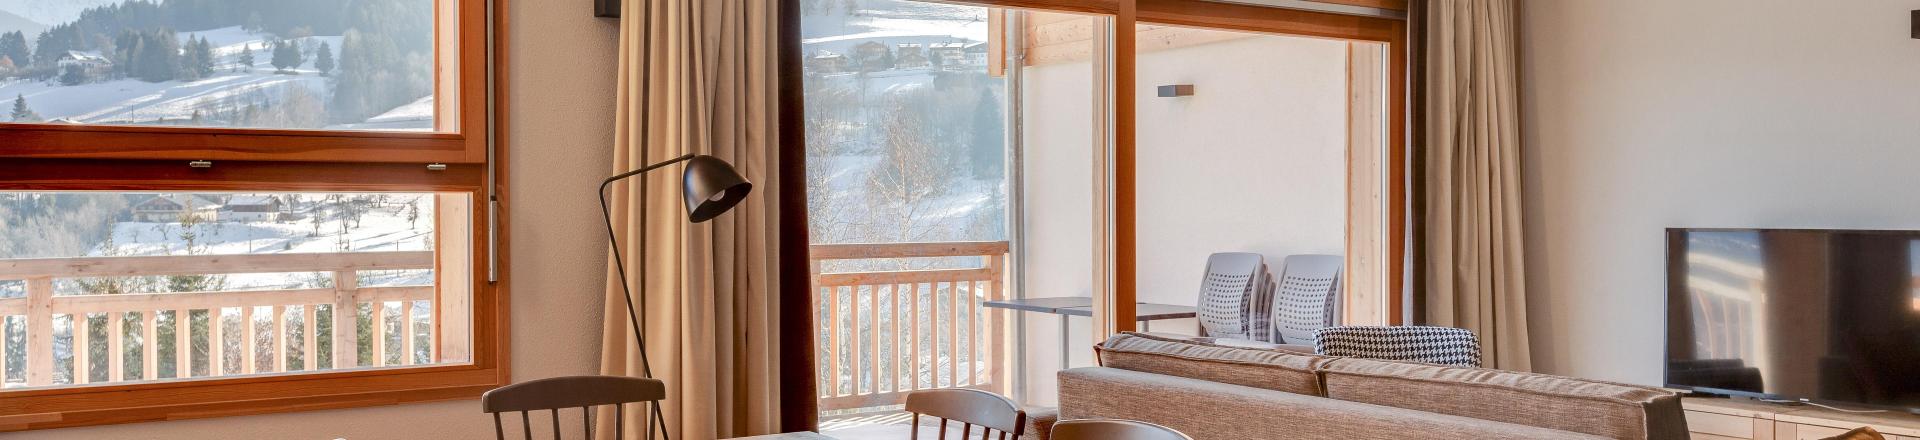 Rent in ski resort Semi-detached 4 room chalet 8 people (triplex) - Résidence les Fermes du Mont Blanc - Combloux - Dining area